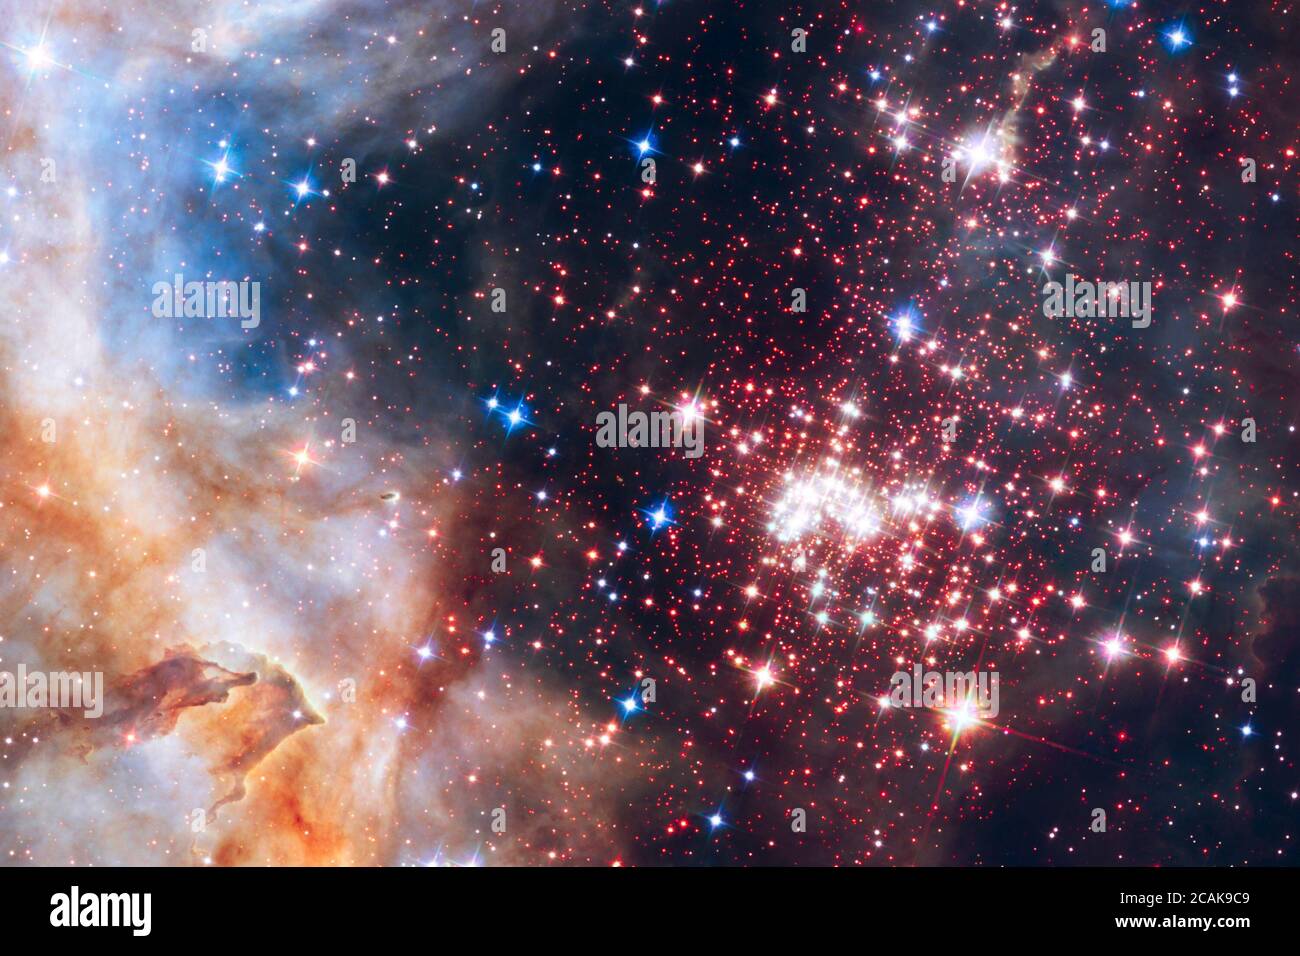 Questa immagine mostra il pezzo forte scintillante del tributo di 25° anniversario di Hubble. Westerlund 2 è un gigantesco gruppo di circa 3000 stelle situato a 20 000 anni luce nella costellazione della Carina. La telecamera di imaging a infrarossi di Hubble attraversa il velo polveroso che avvolge il vivaio stellare, offrendo agli astronomi una visione chiara della densa concentrazione di stelle nel cluster centrale. Foto Stock